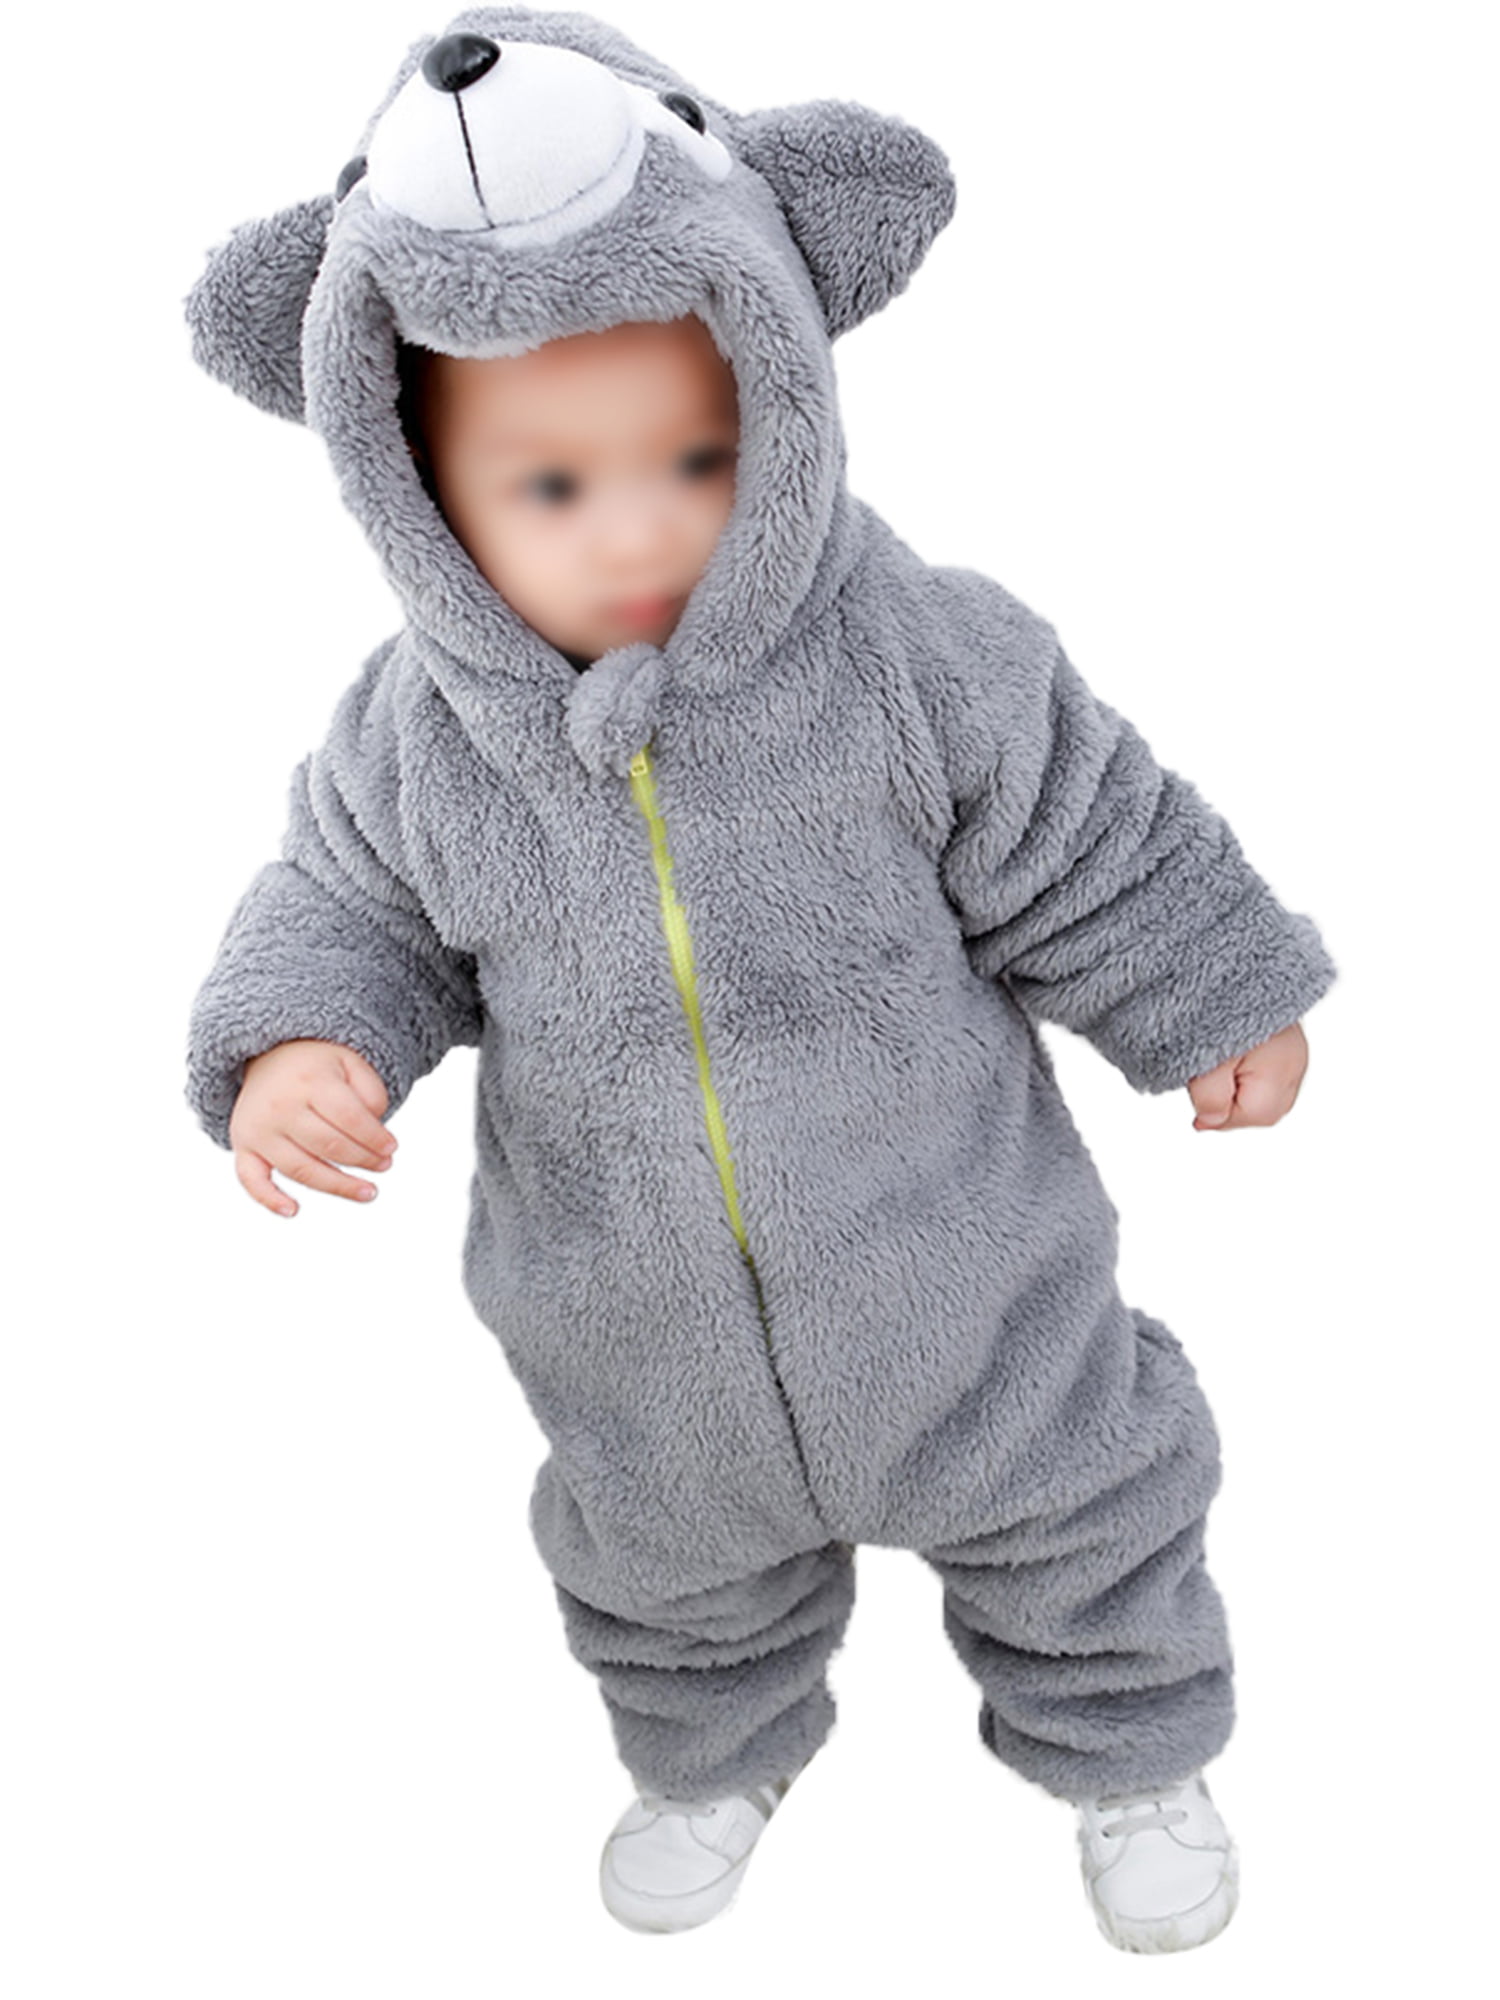 Baby Boy Girl Crew Neck Long-Sleeve Solid Color Climbing Clothes Baby Shark DOO DOO DOO DOO Jumpsuits Sleepwear 